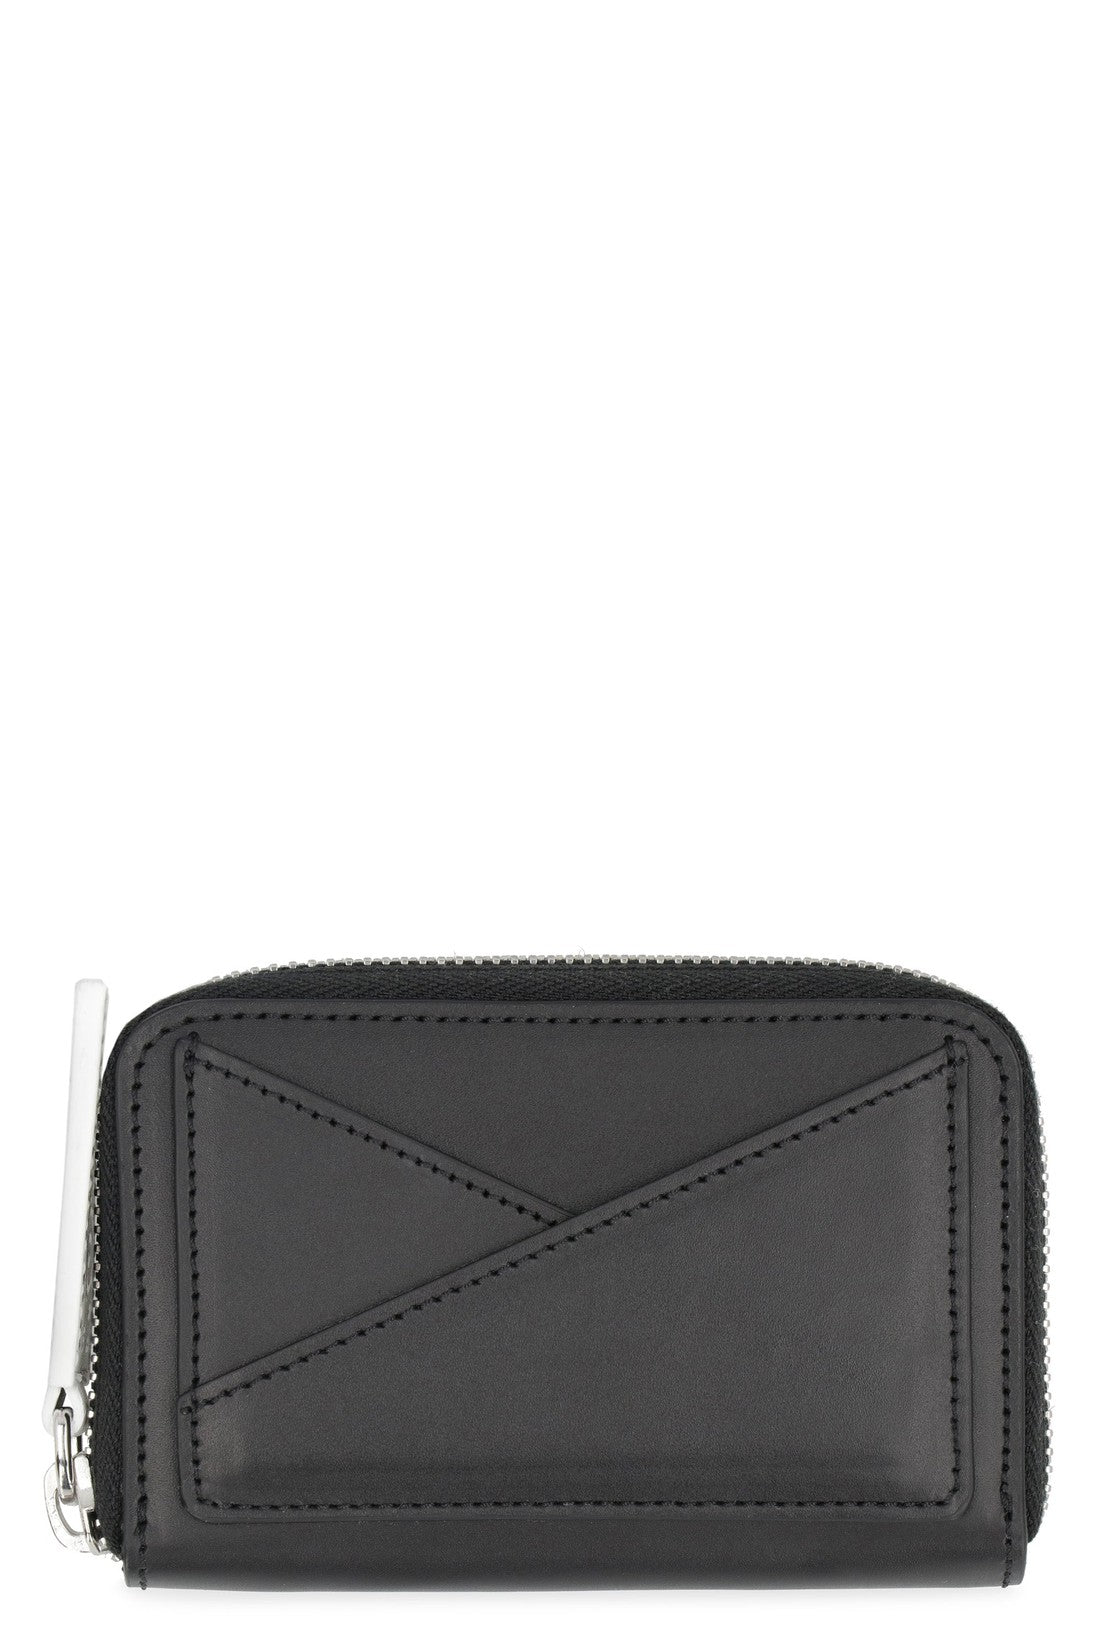 MM6 Maison Margiela-OUTLET-SALE-Japanese 6 micro leather wallet-ARCHIVIST